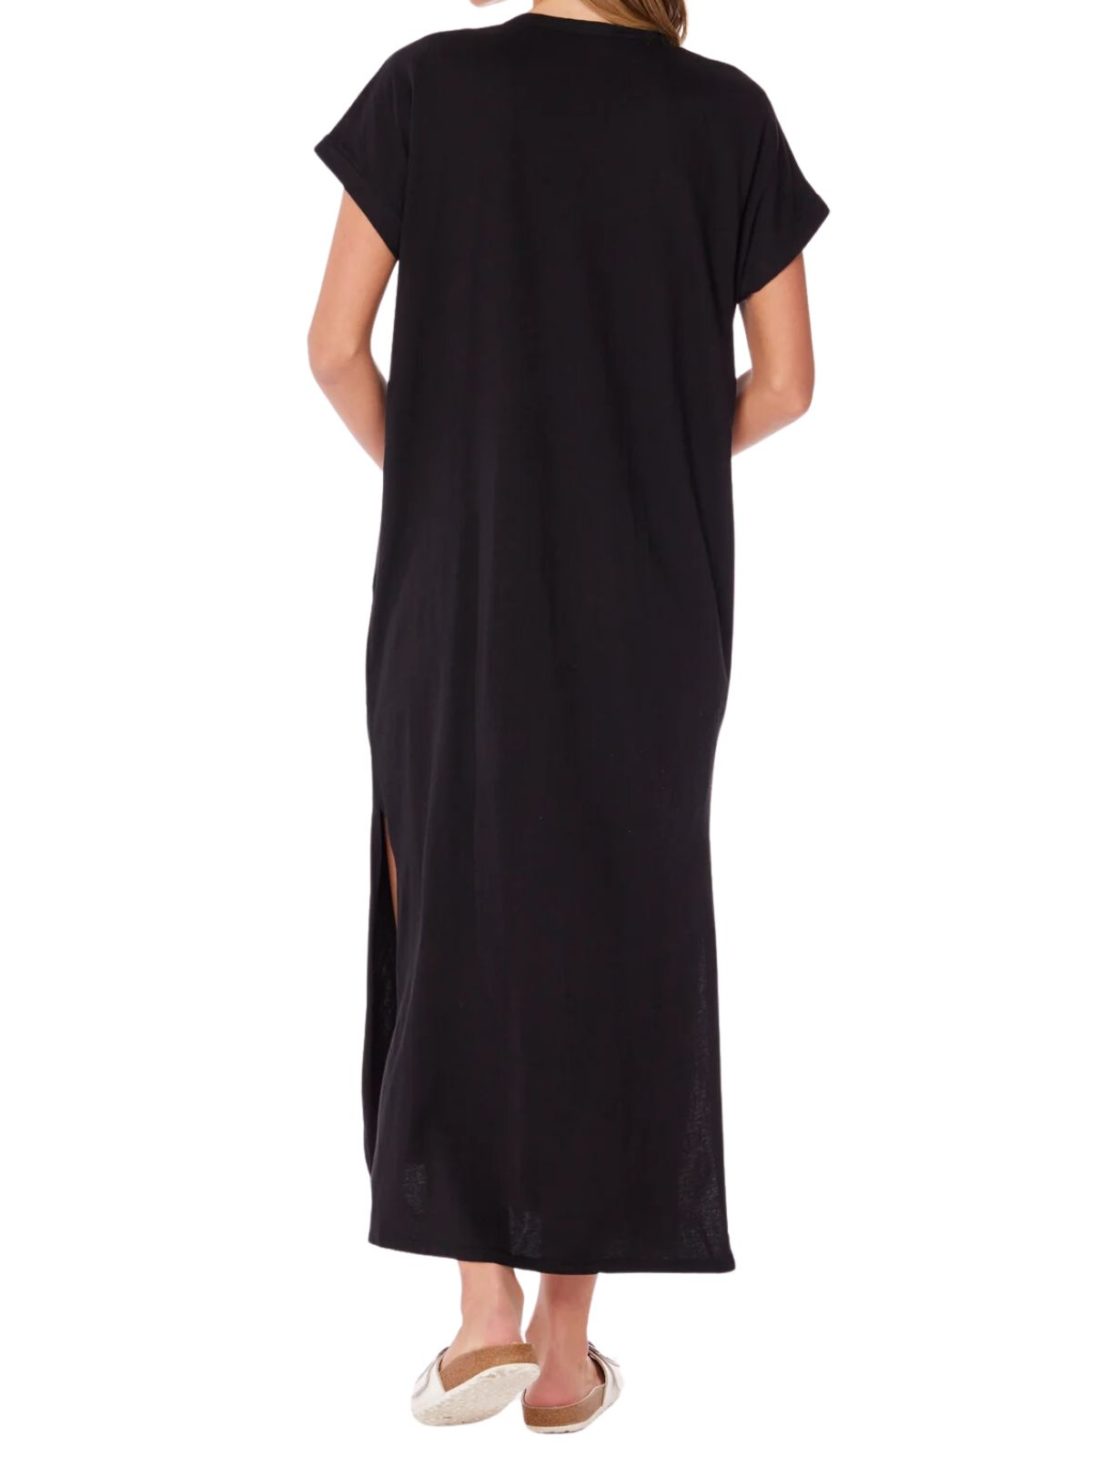 bobi la midi dress with pockets in black